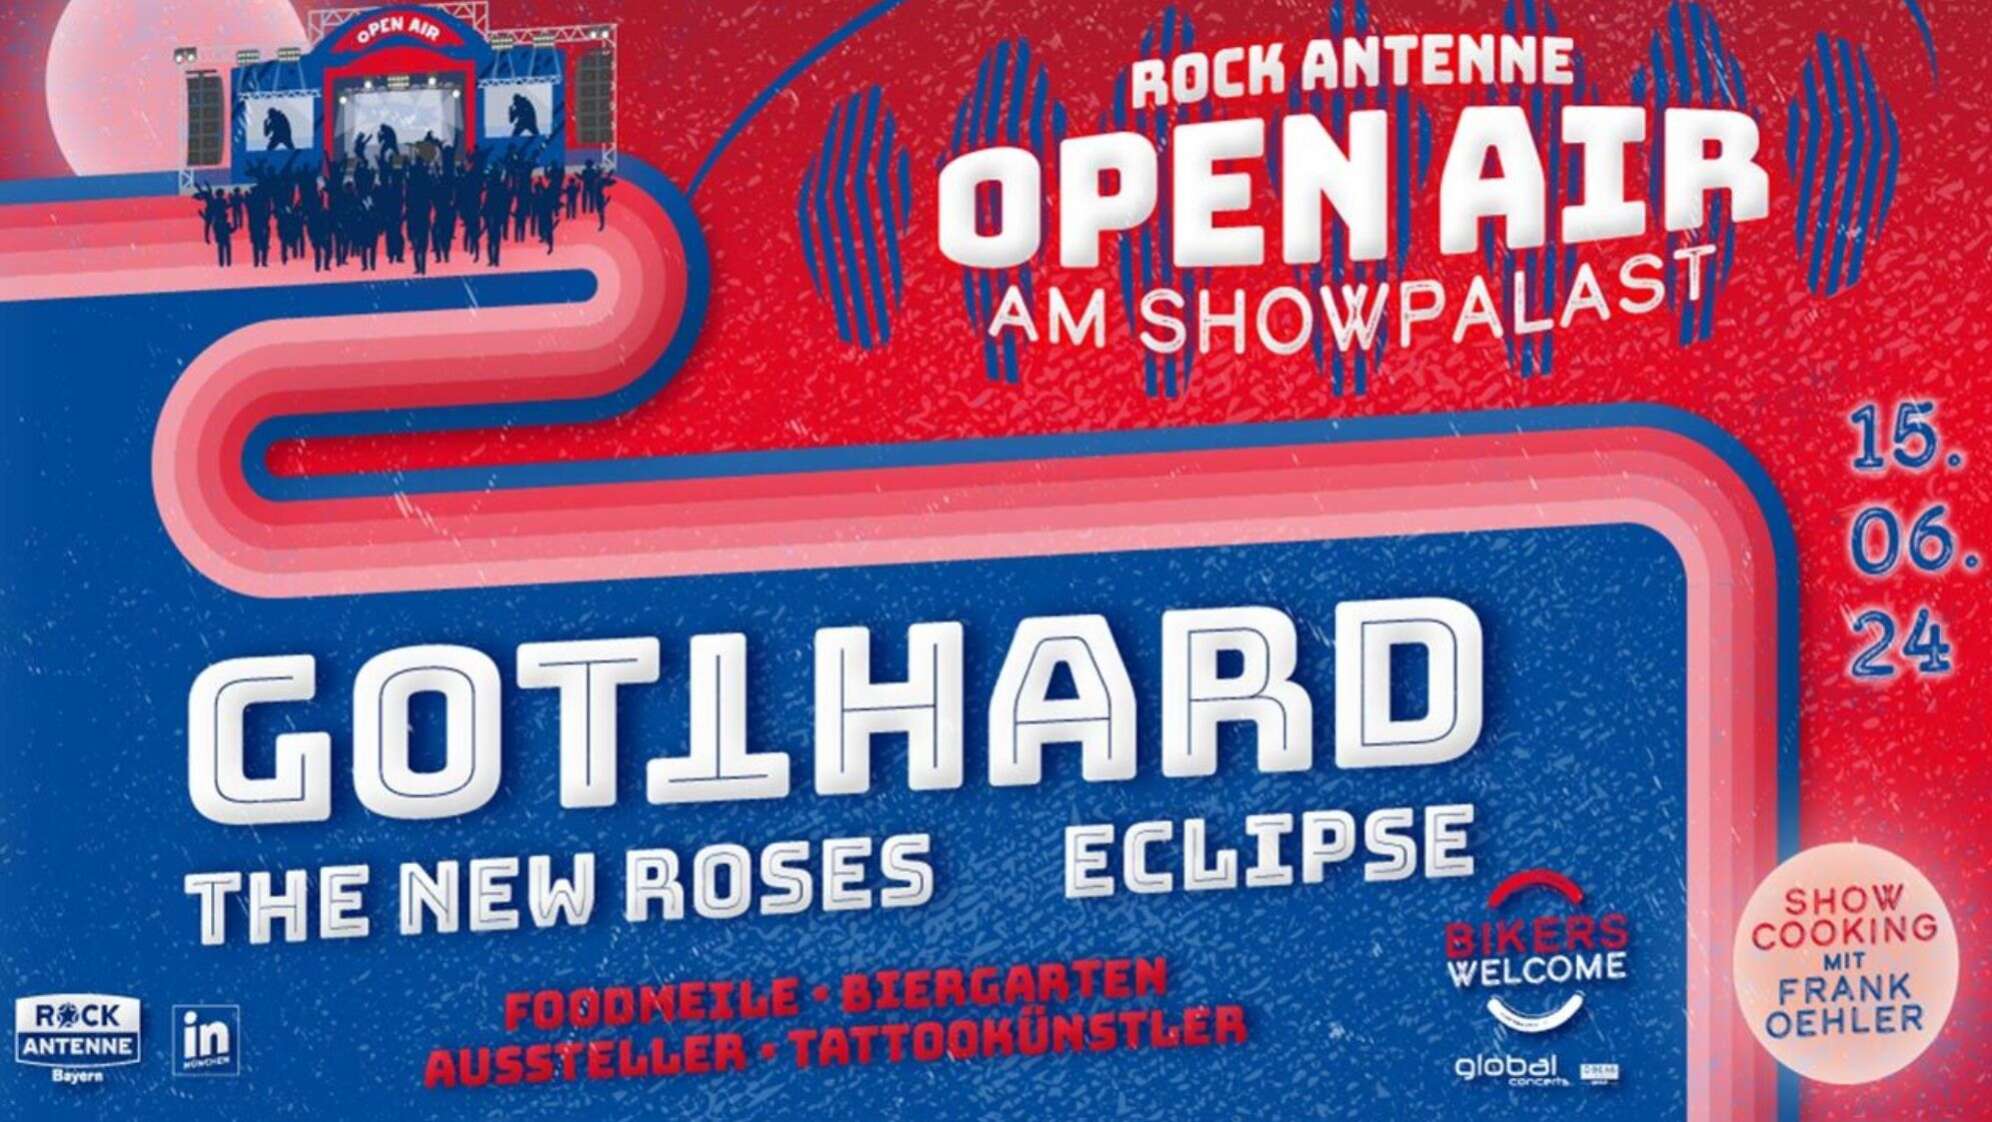 Das ROCK ANTENNE Open Air am 15.06. mit Gotthard, Eclipse und The New Roses!